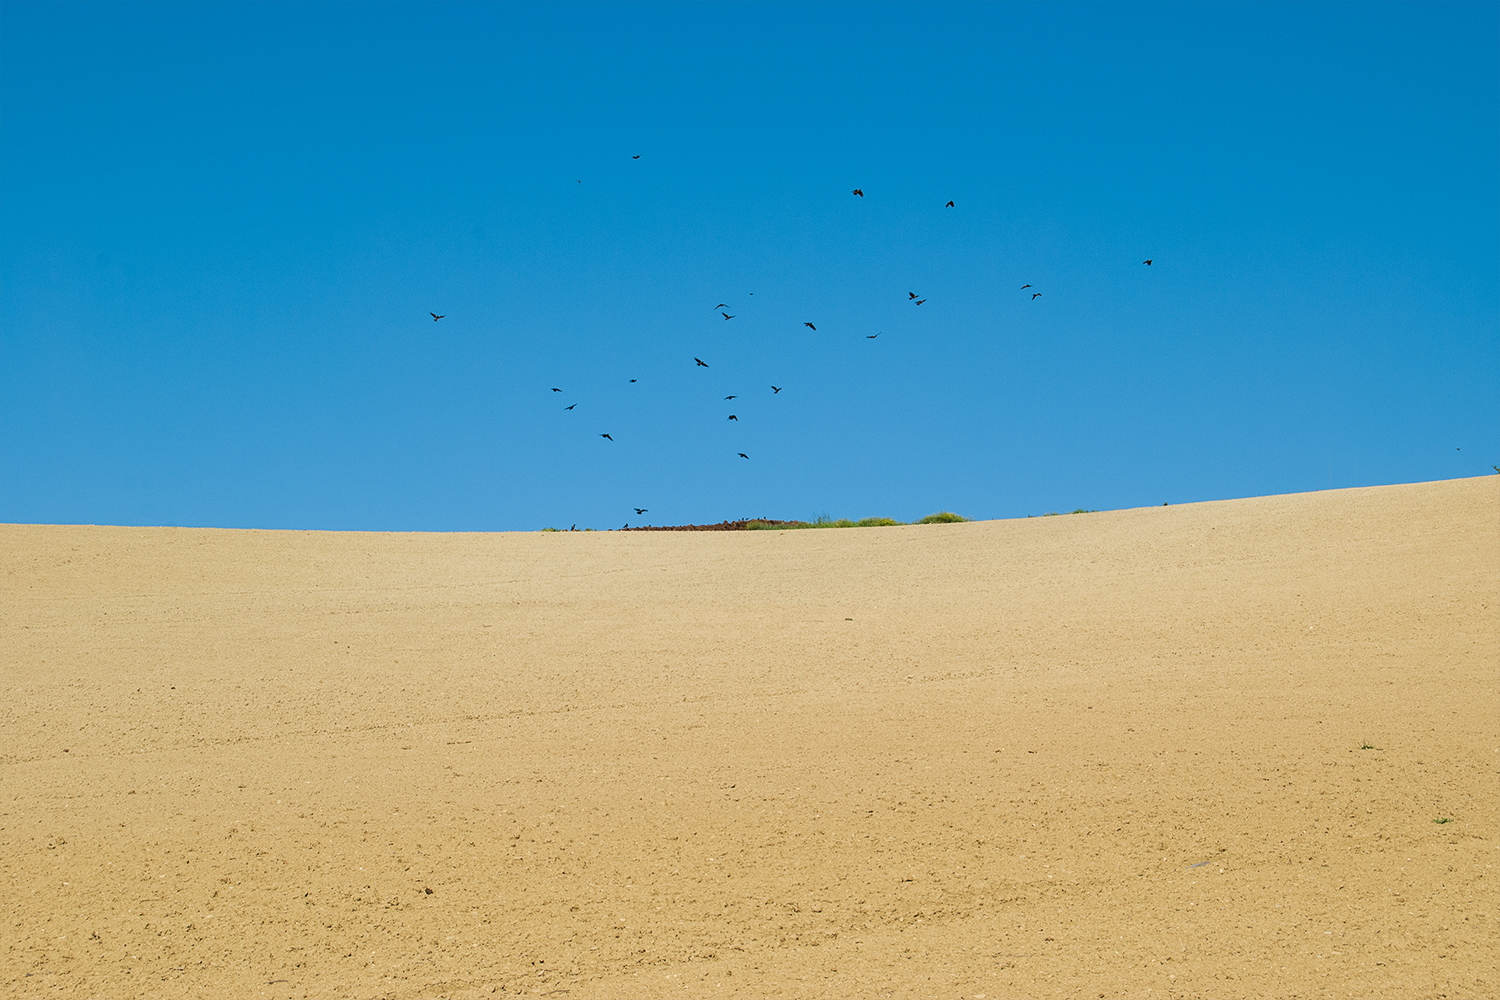 Una collina che sembra una spiaggia o un deserto, cielo azzurro, corvi in volo